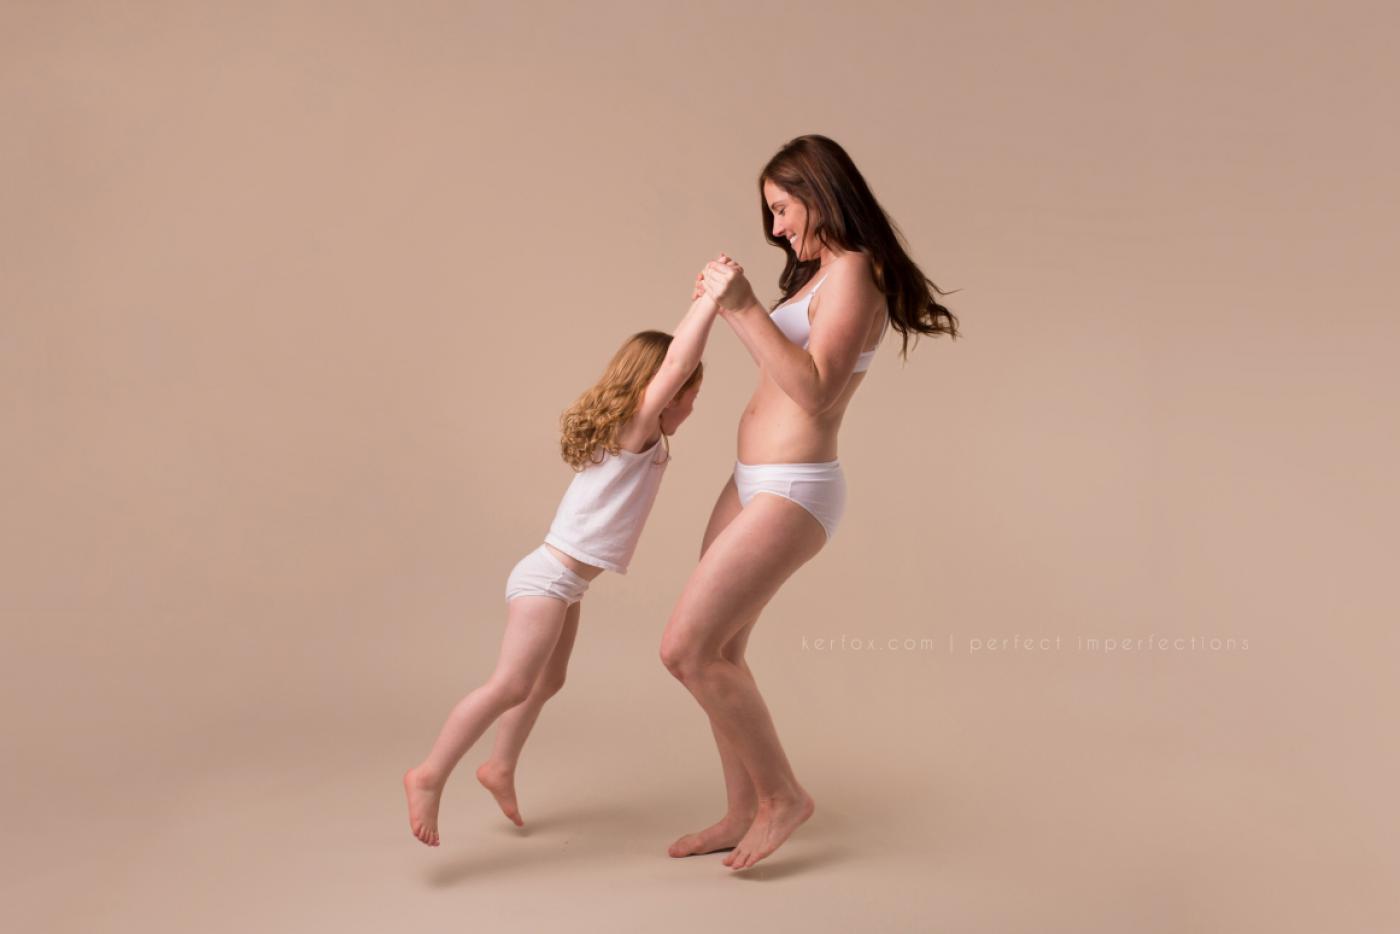 Несовершенные тела могут быть прекрасными: женщины после родов в объективе фотографа